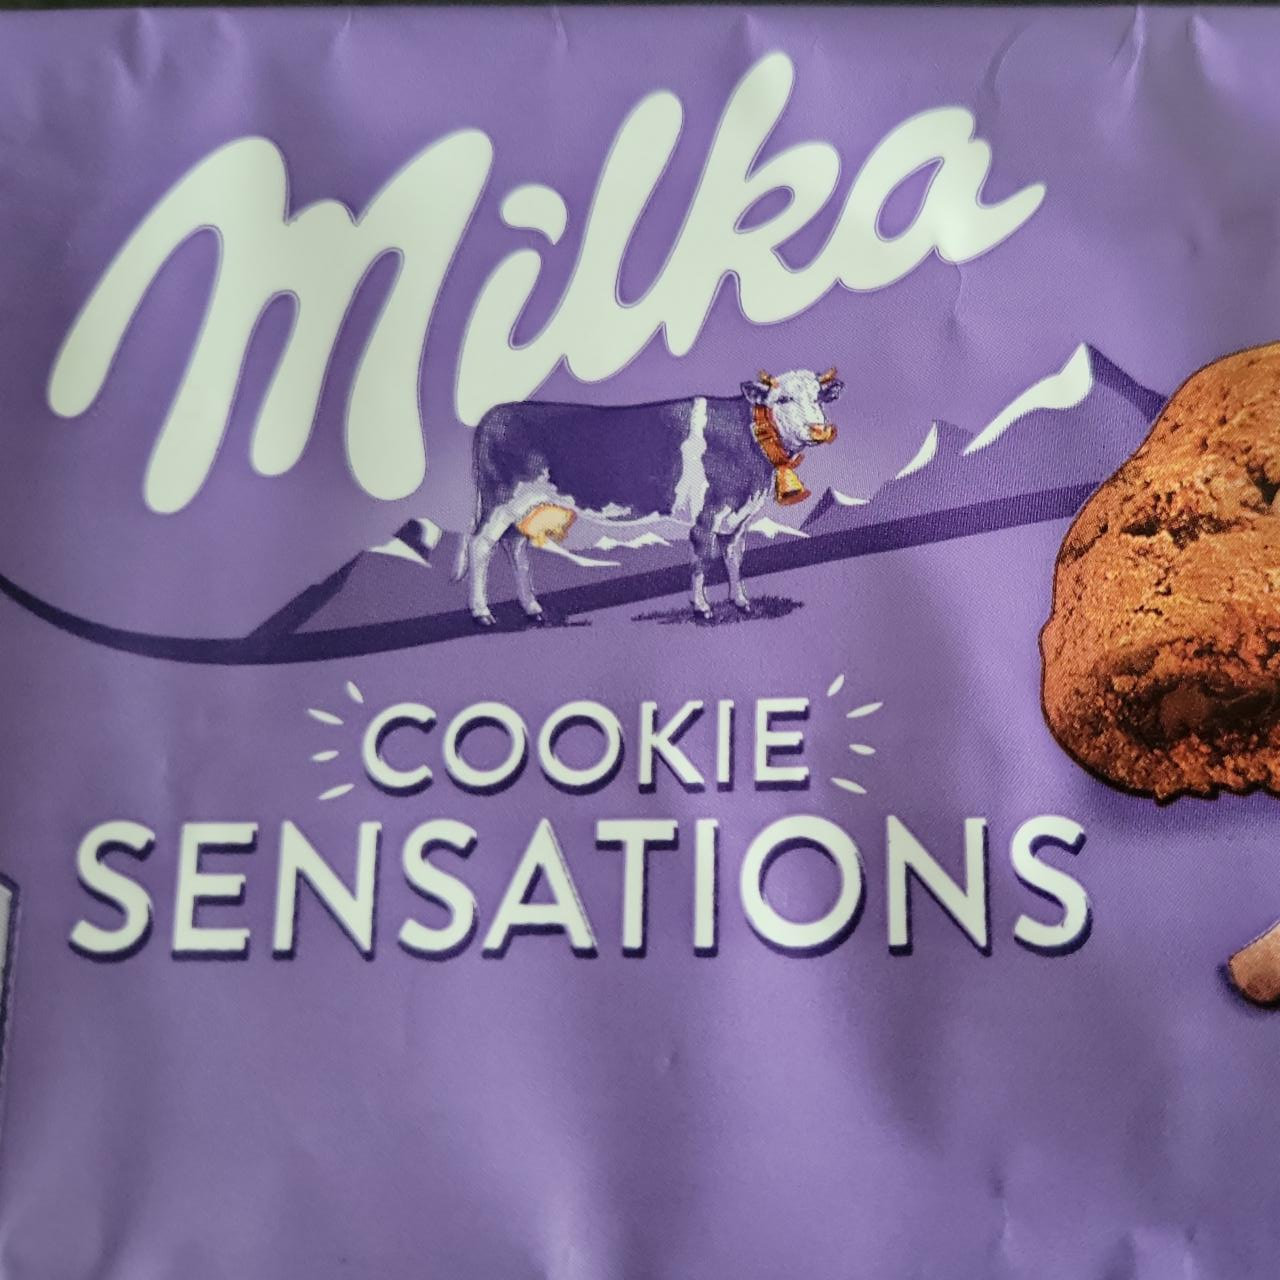 Фото - печенье с мягким шоколадом внутри Sensations Milka